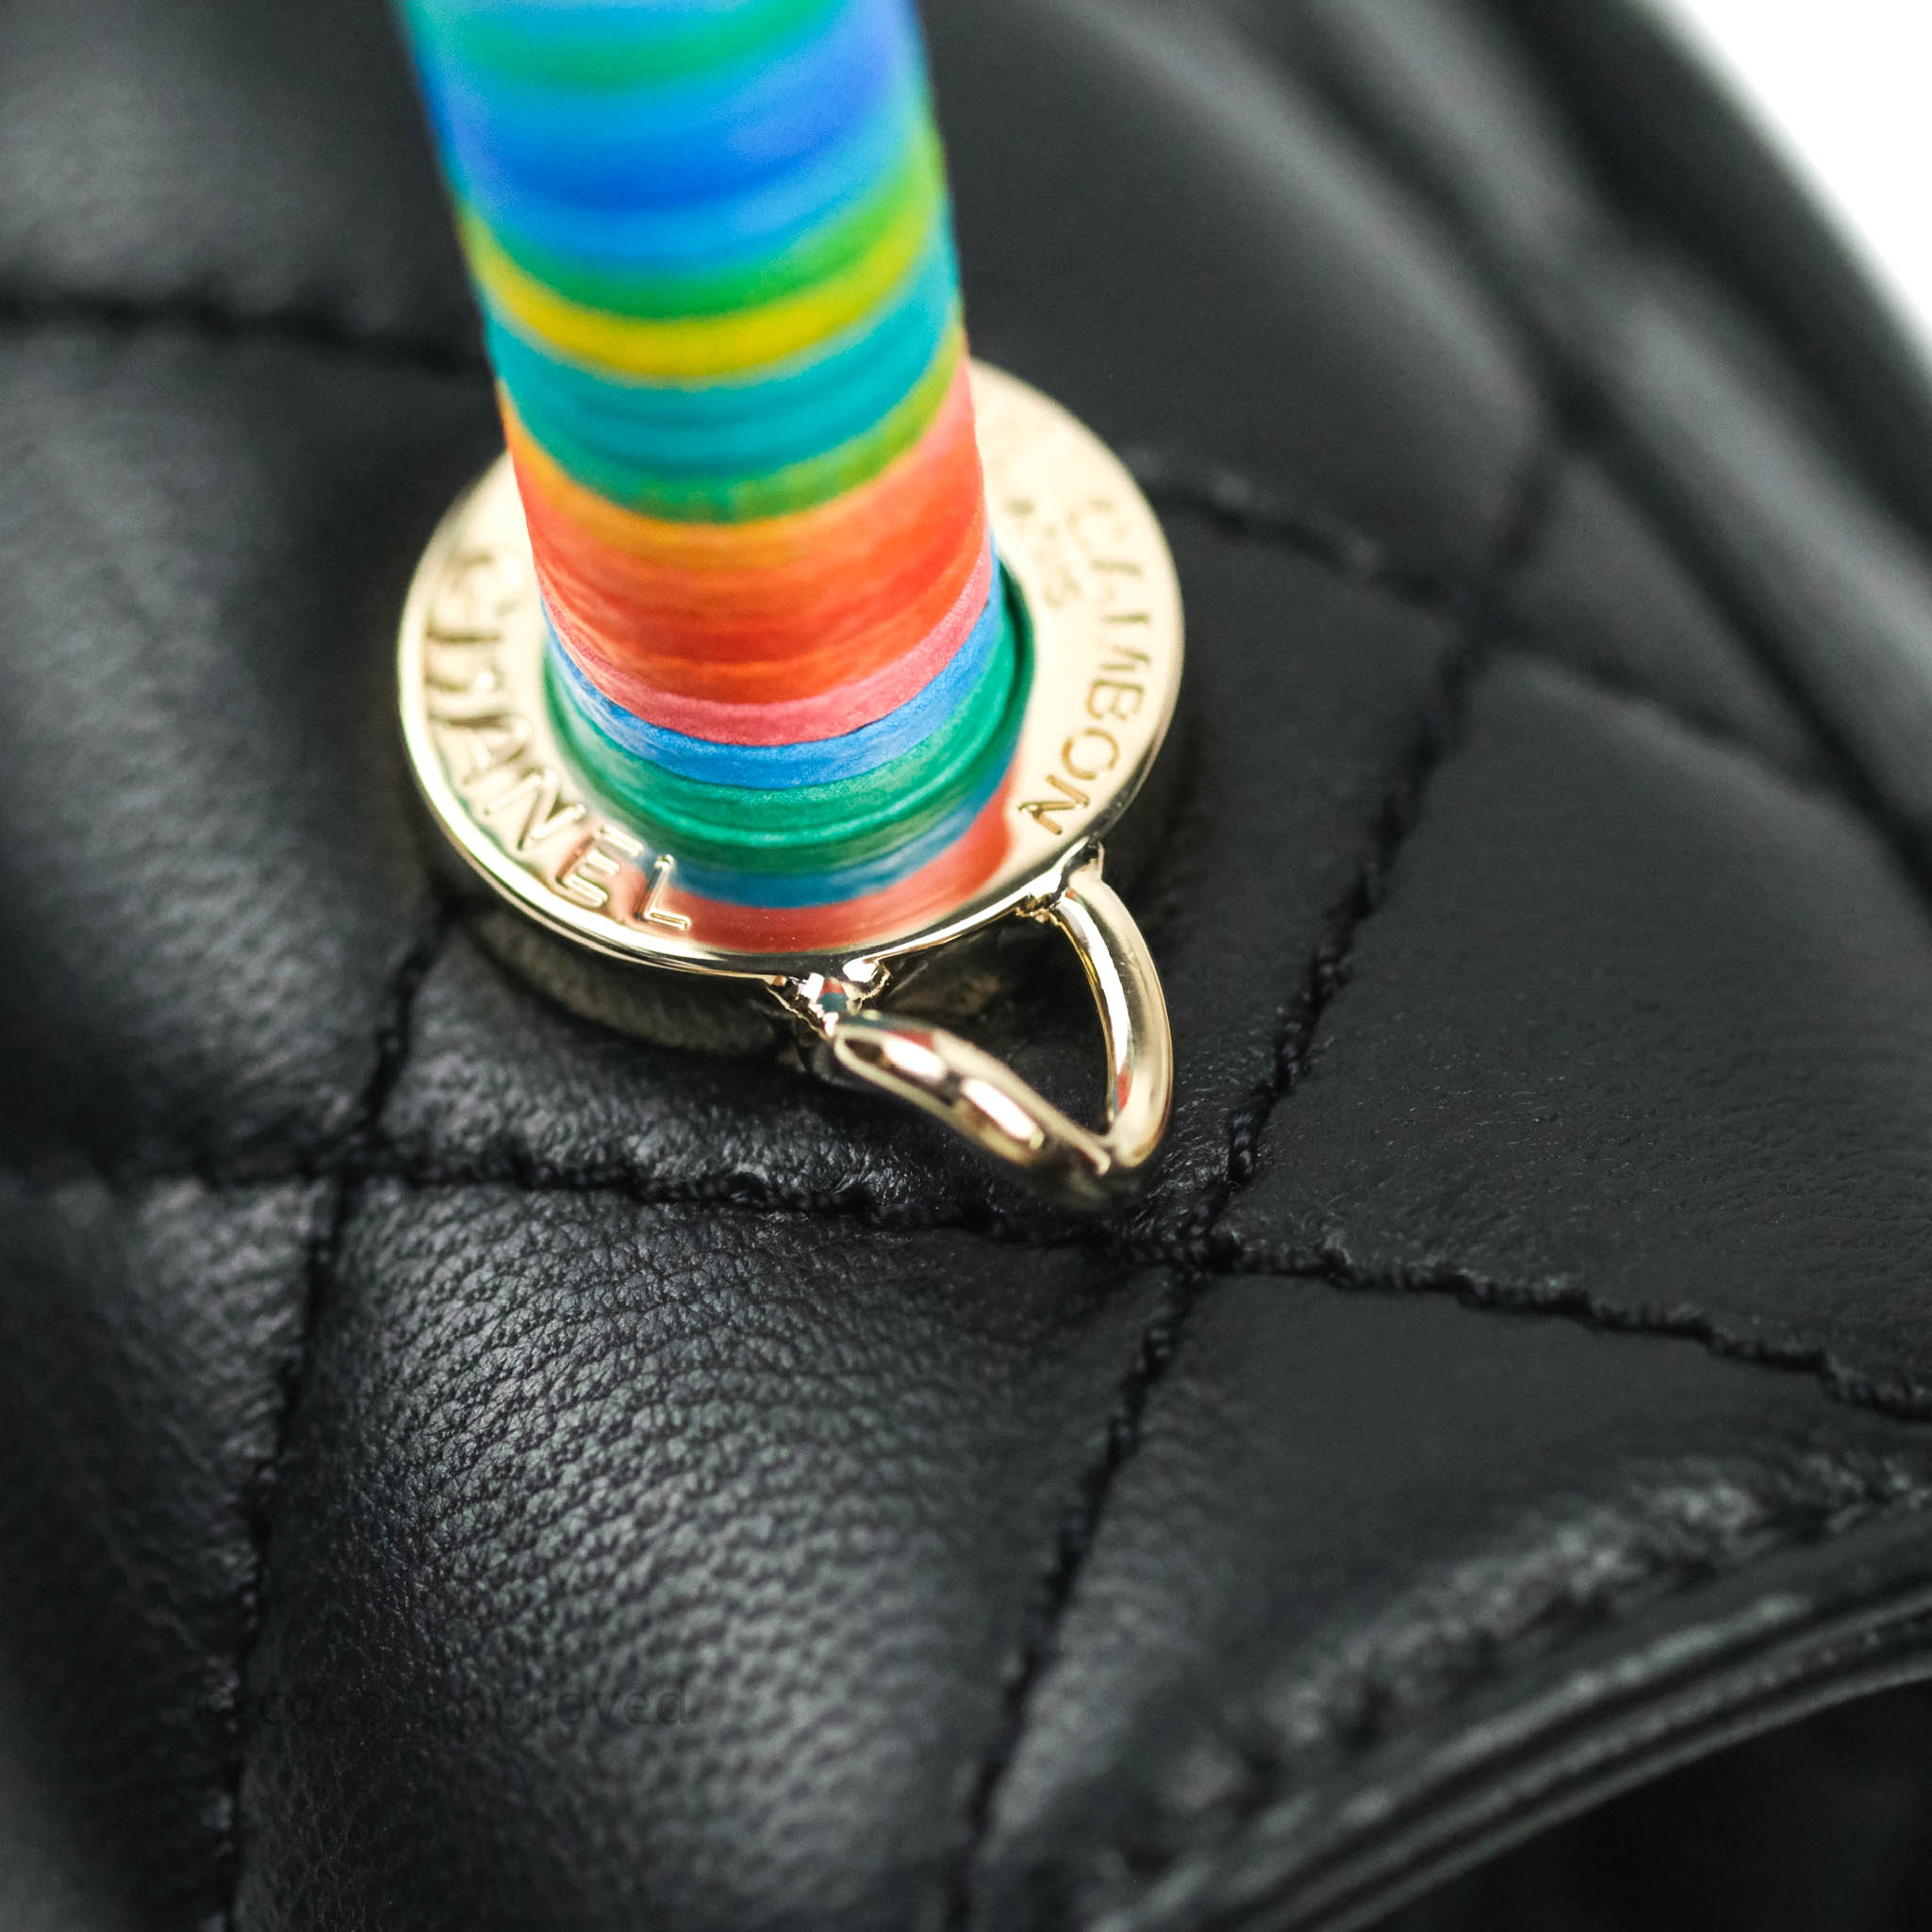 Chanel Extra Mini Coco Handle Handbag